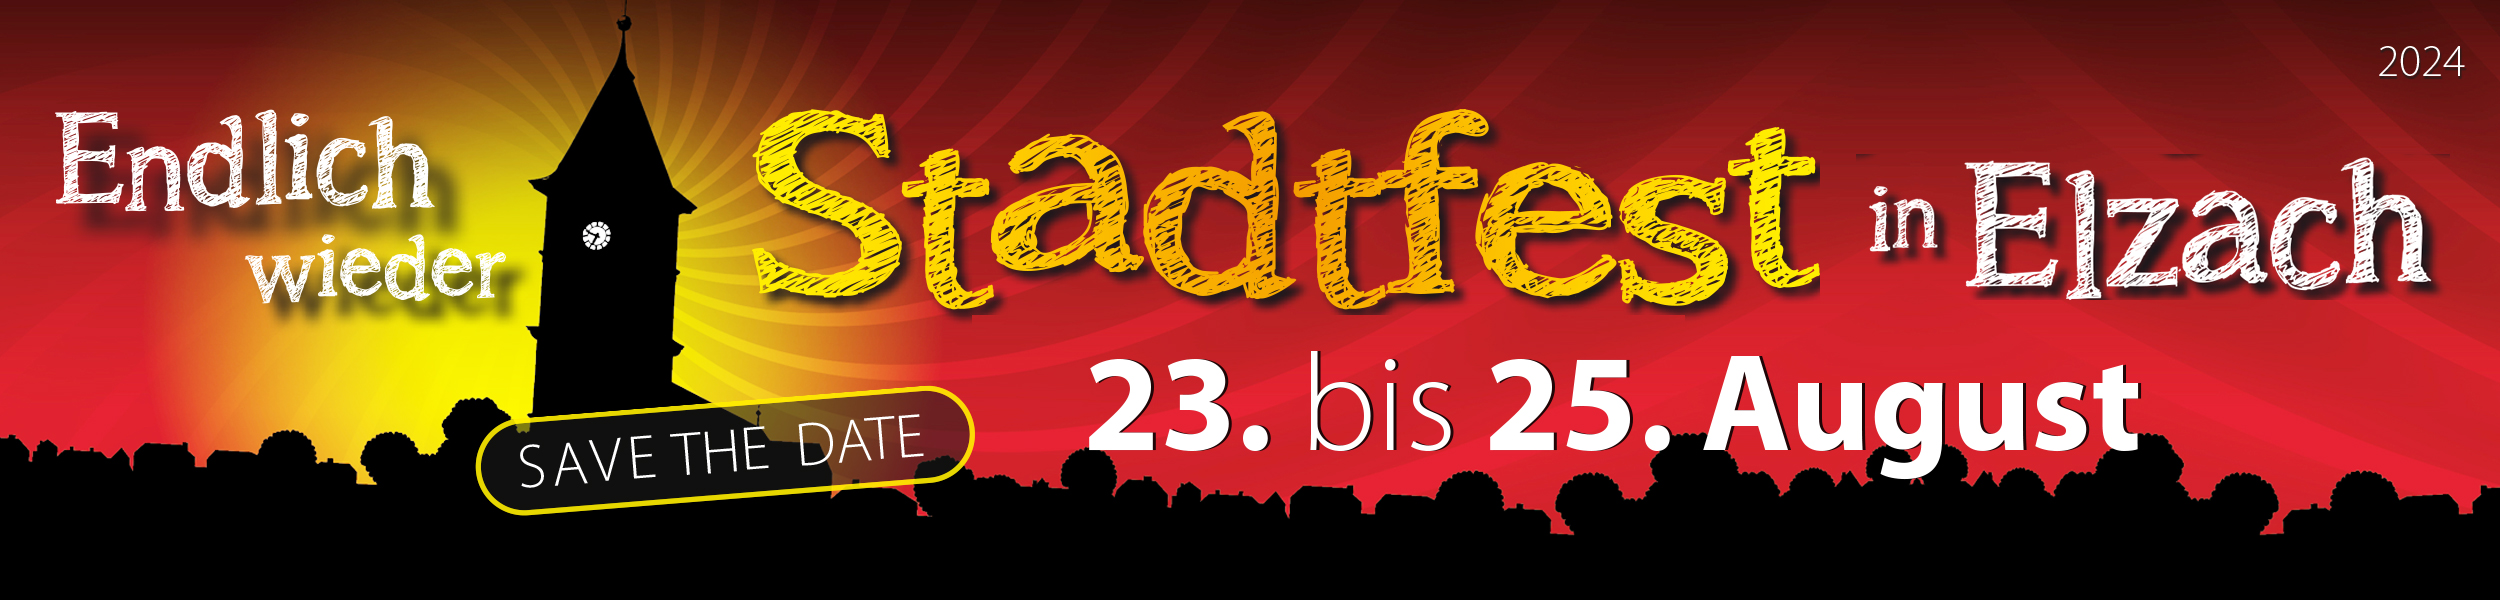 Stadtfest in Elzach 23. bis 25. August 2024